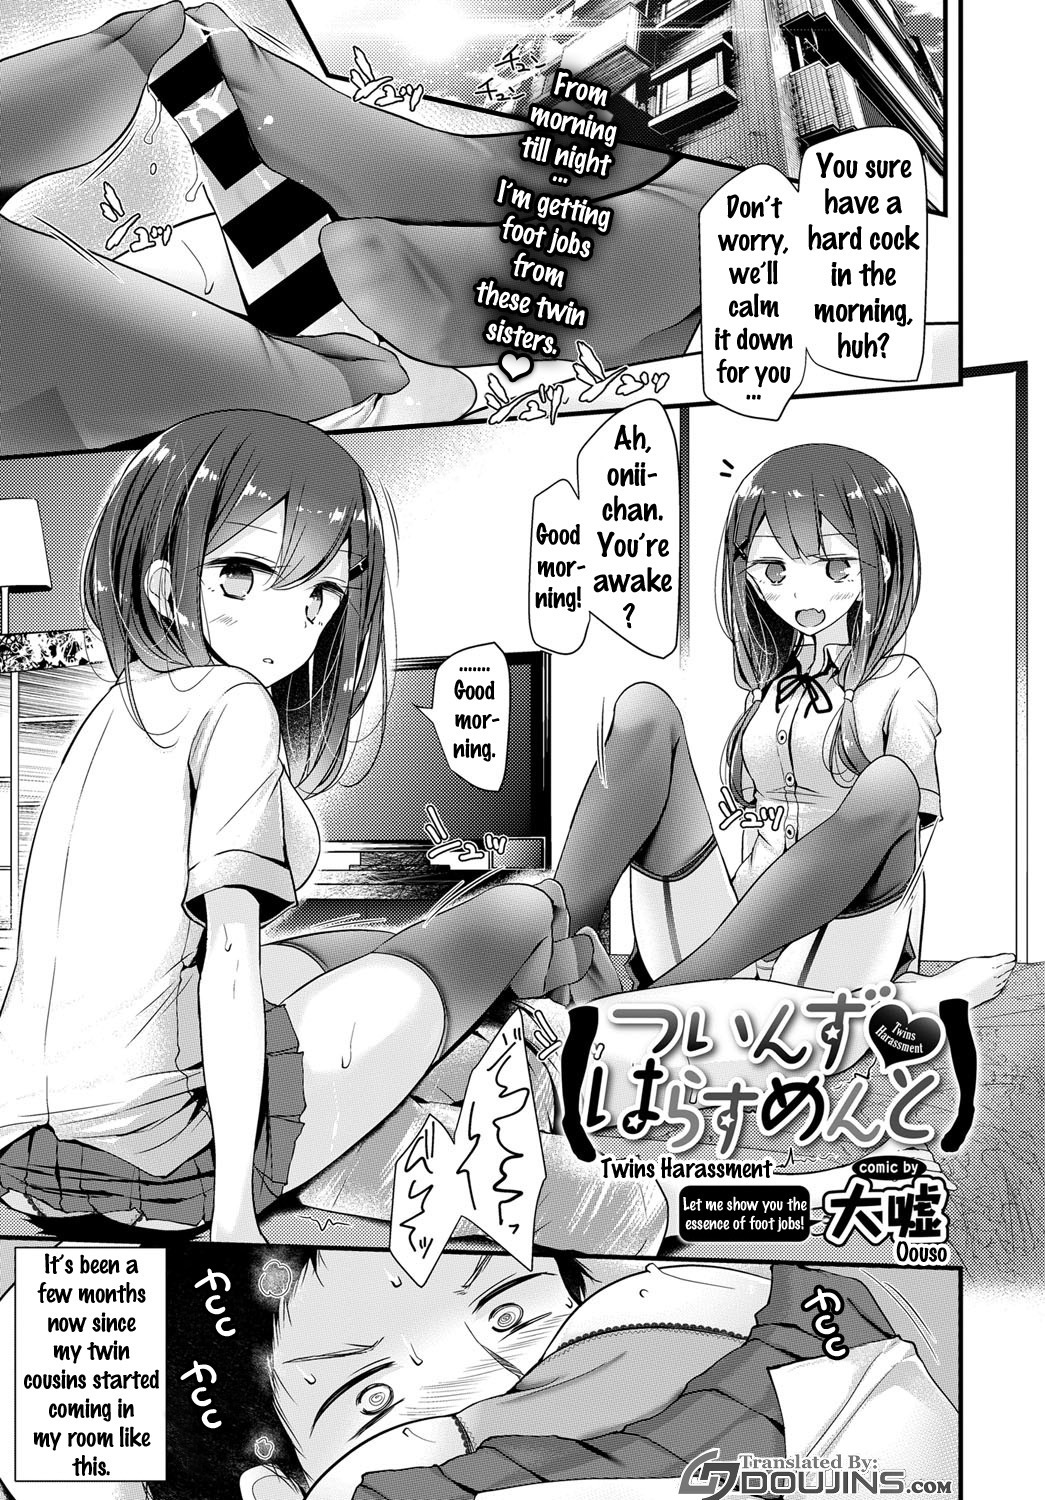 Best foot fetish hentai manga